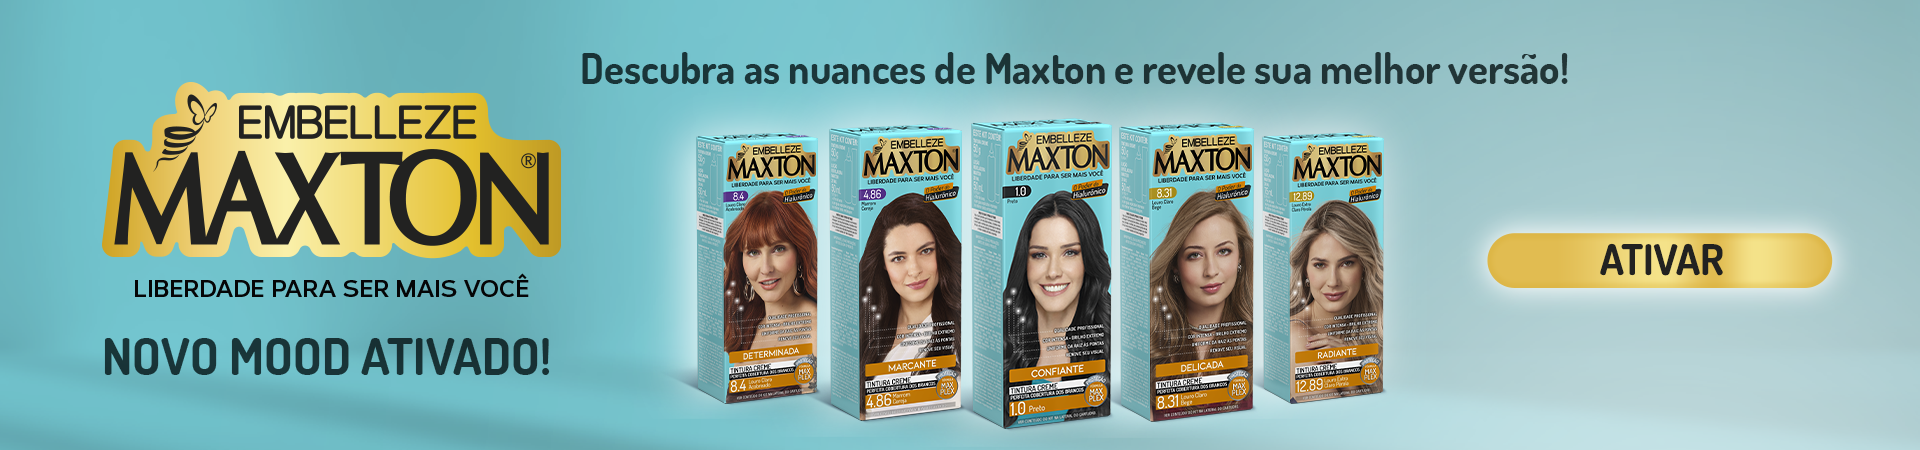 Maxton 2